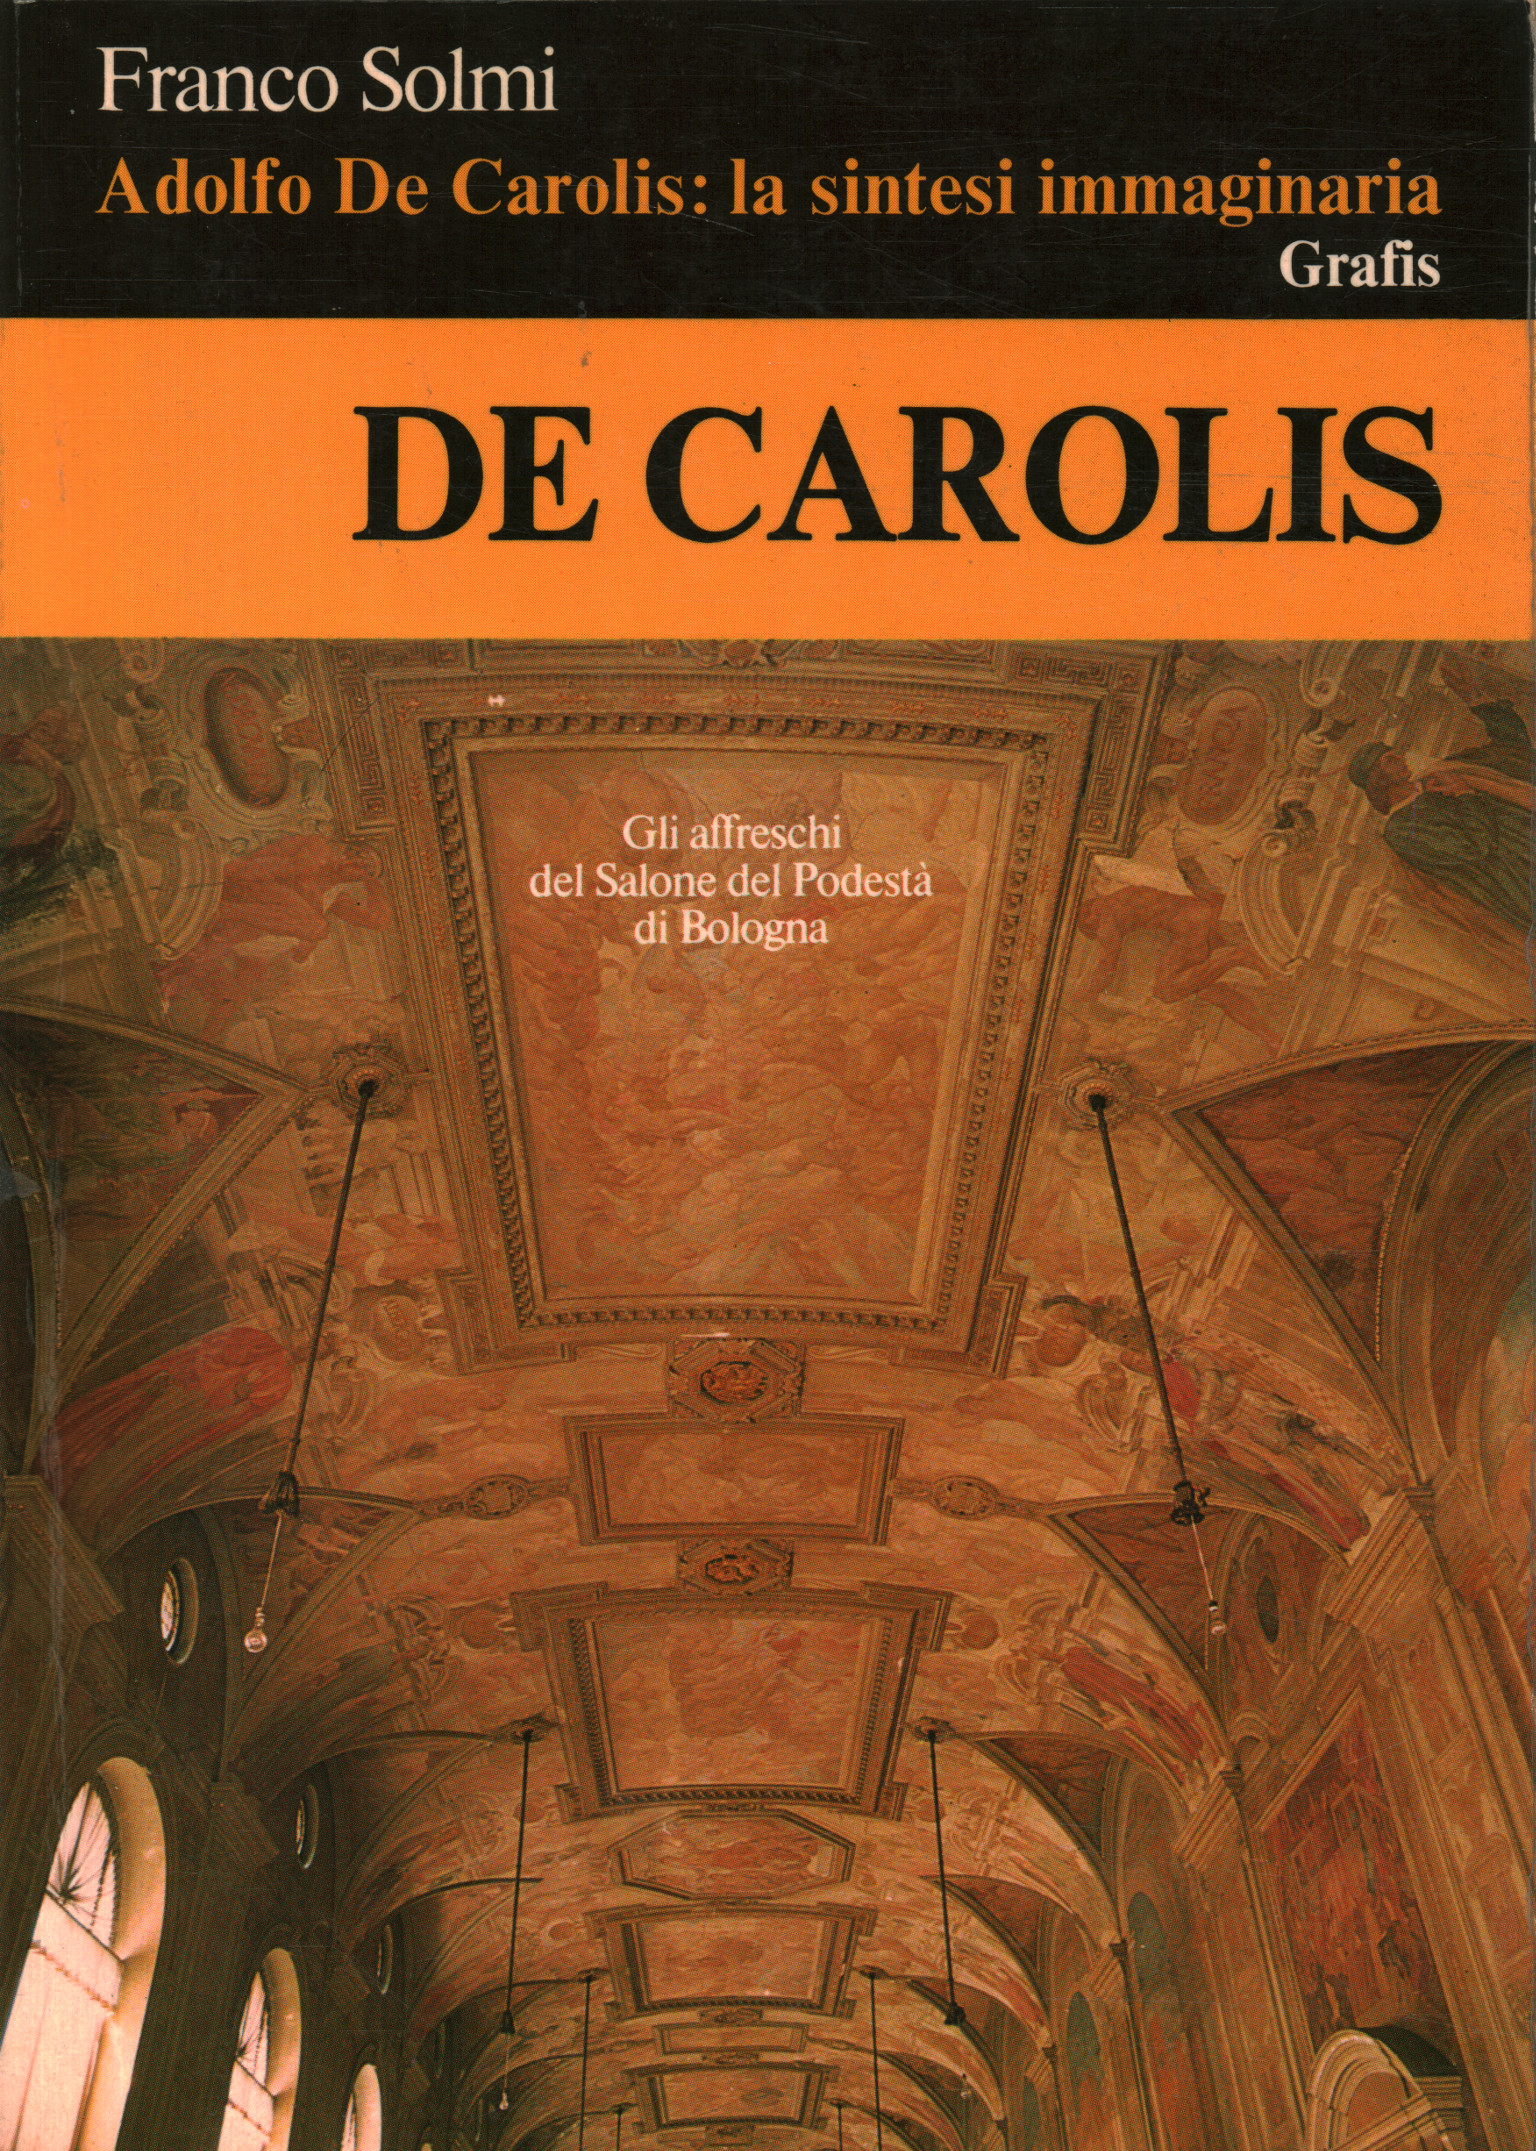 Adolfo De Carolis: die imaginäre Synthese